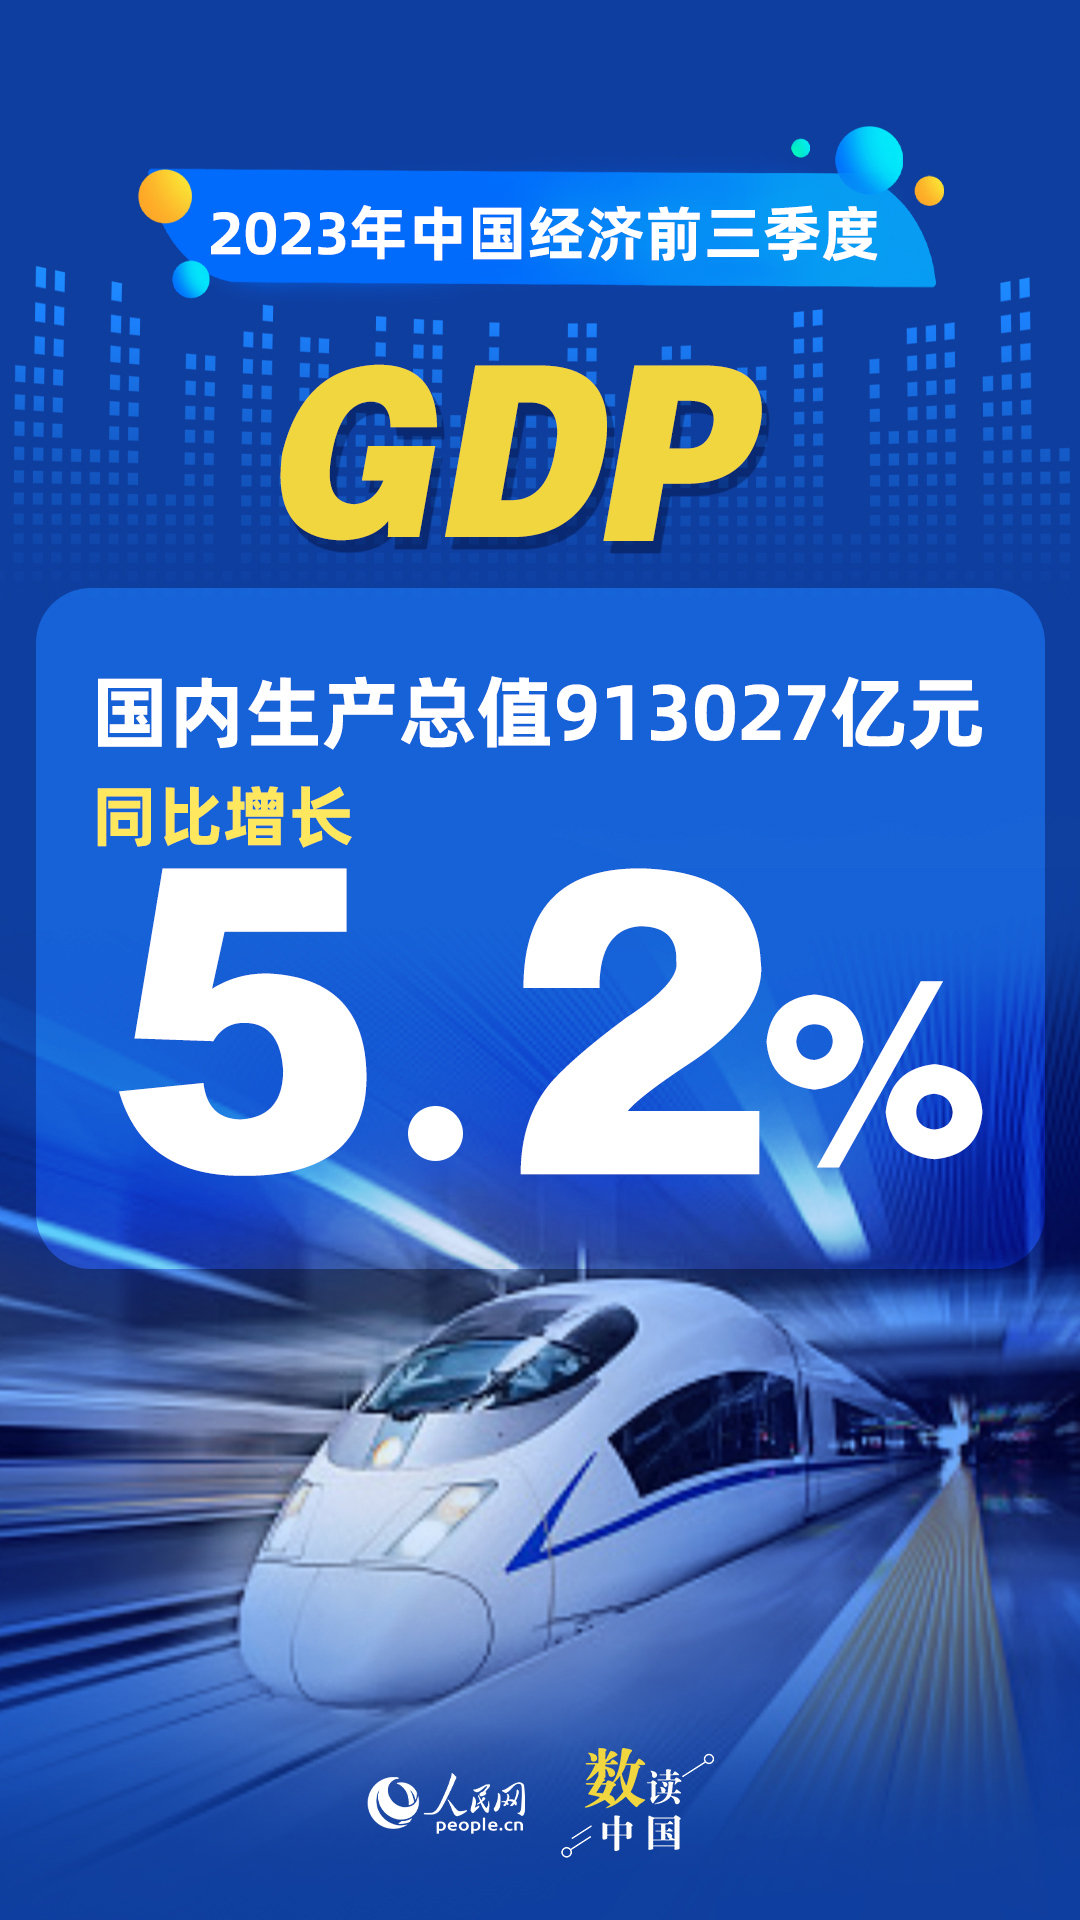 天顺：数读中国 | 前三季度国民经济持续恢复向好 积极因素累积增多